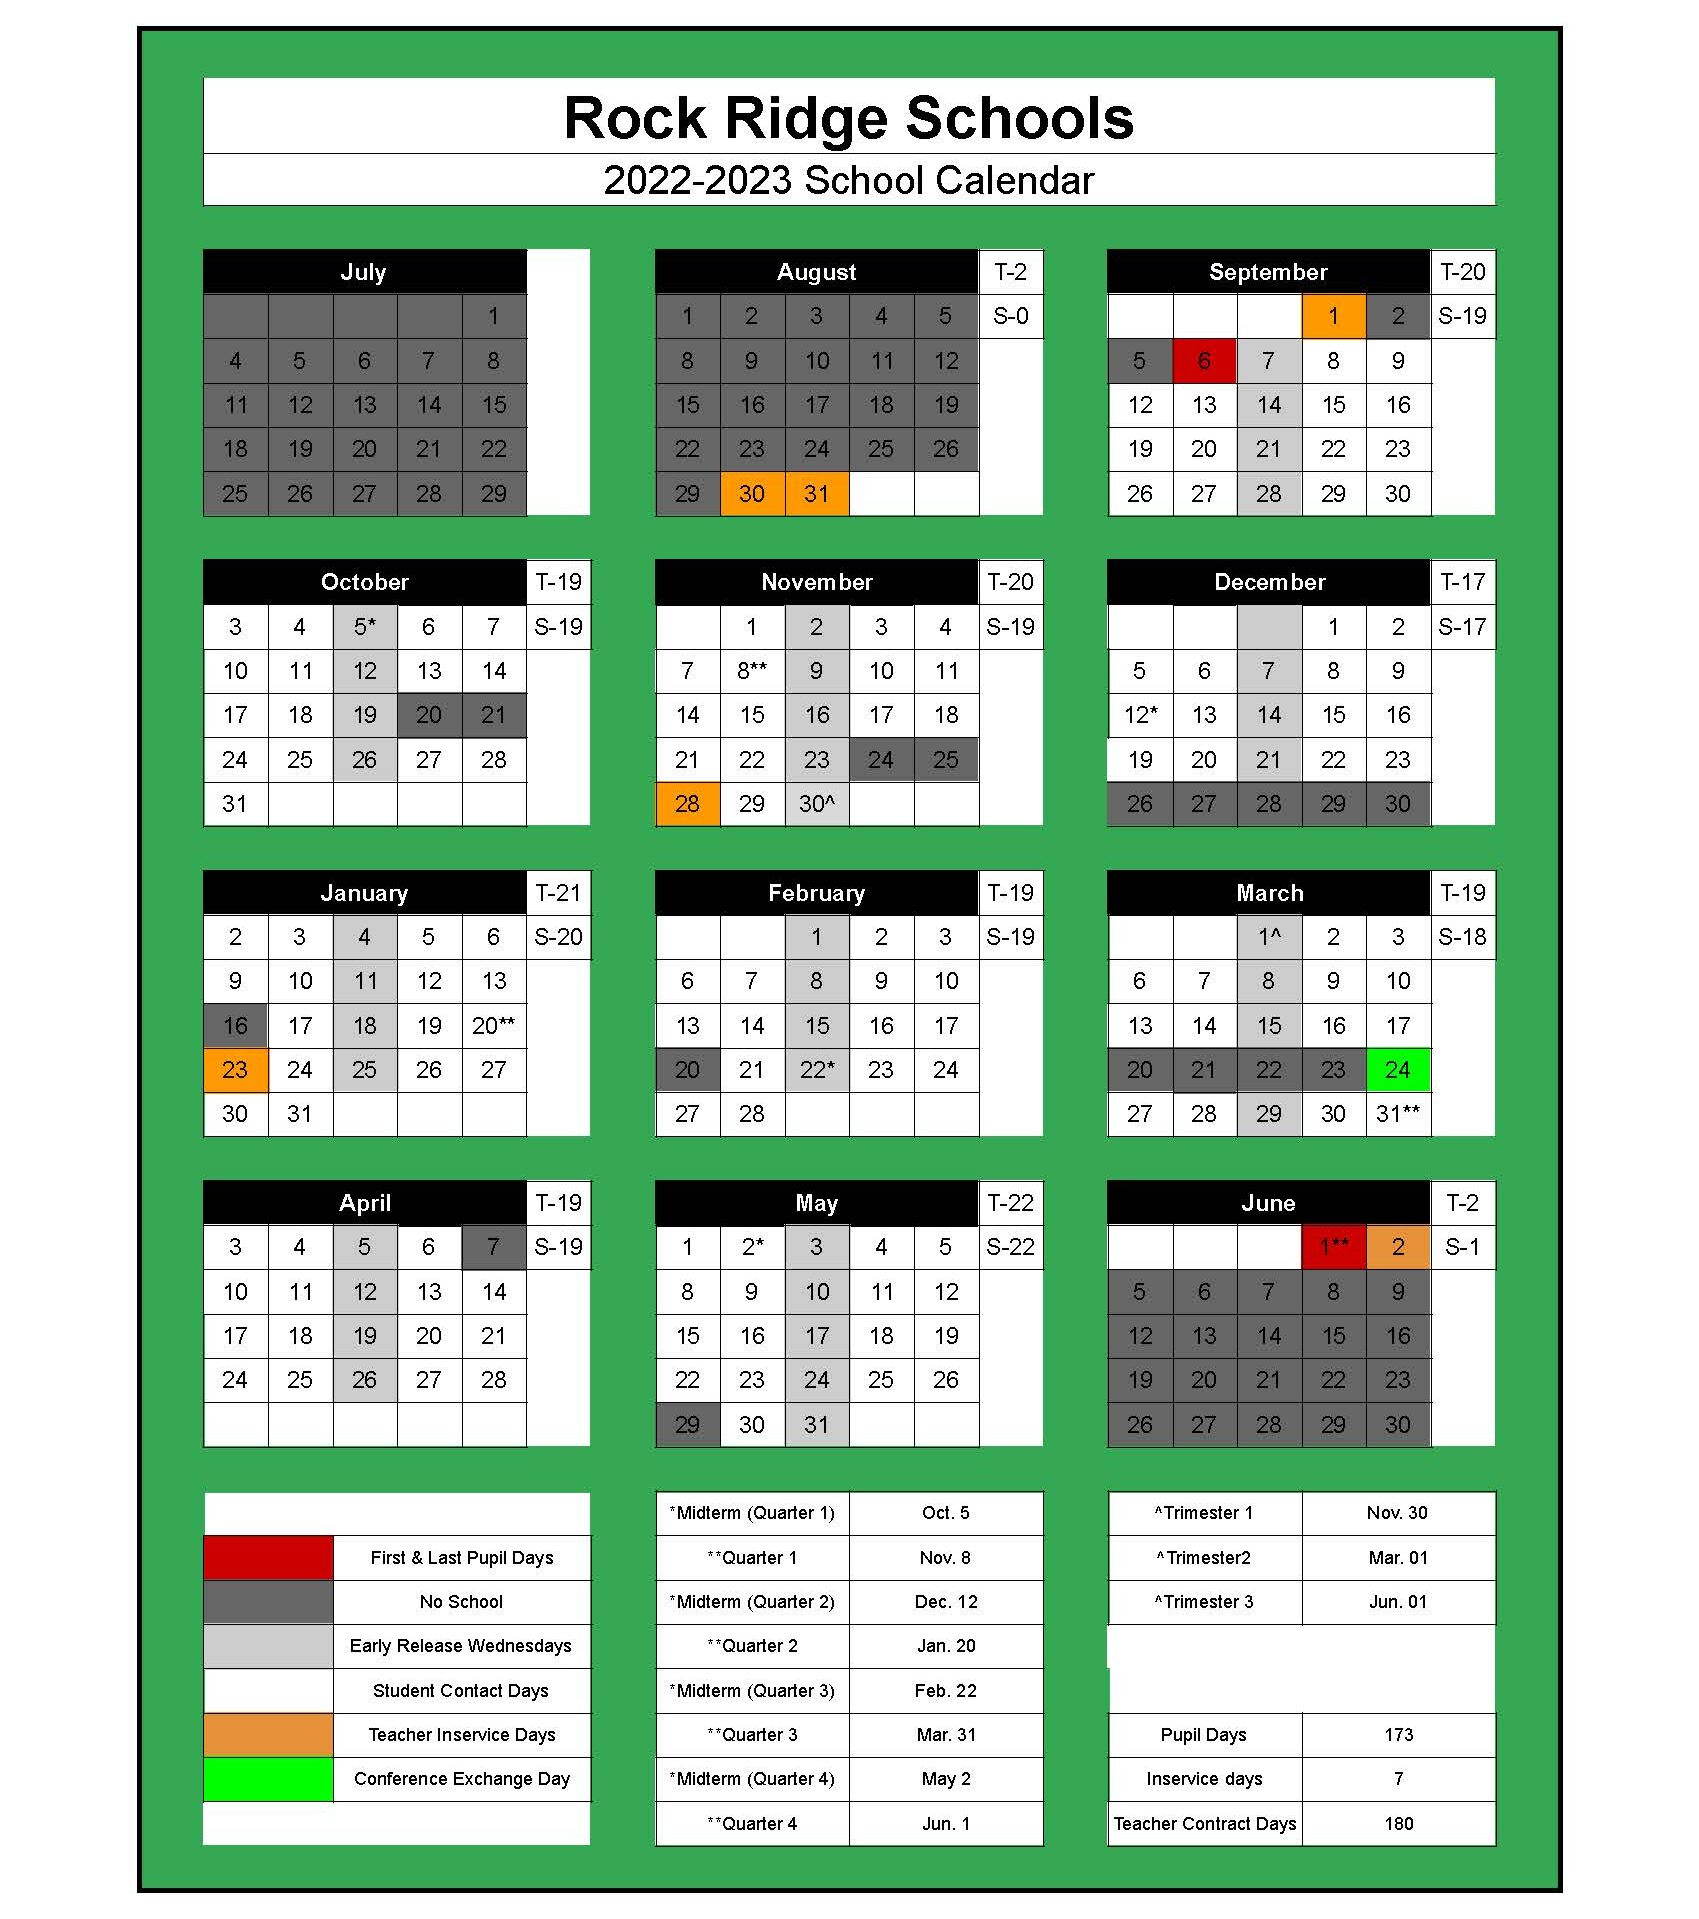 Rock Ridge Public Schools Calendar 2022 and 2023